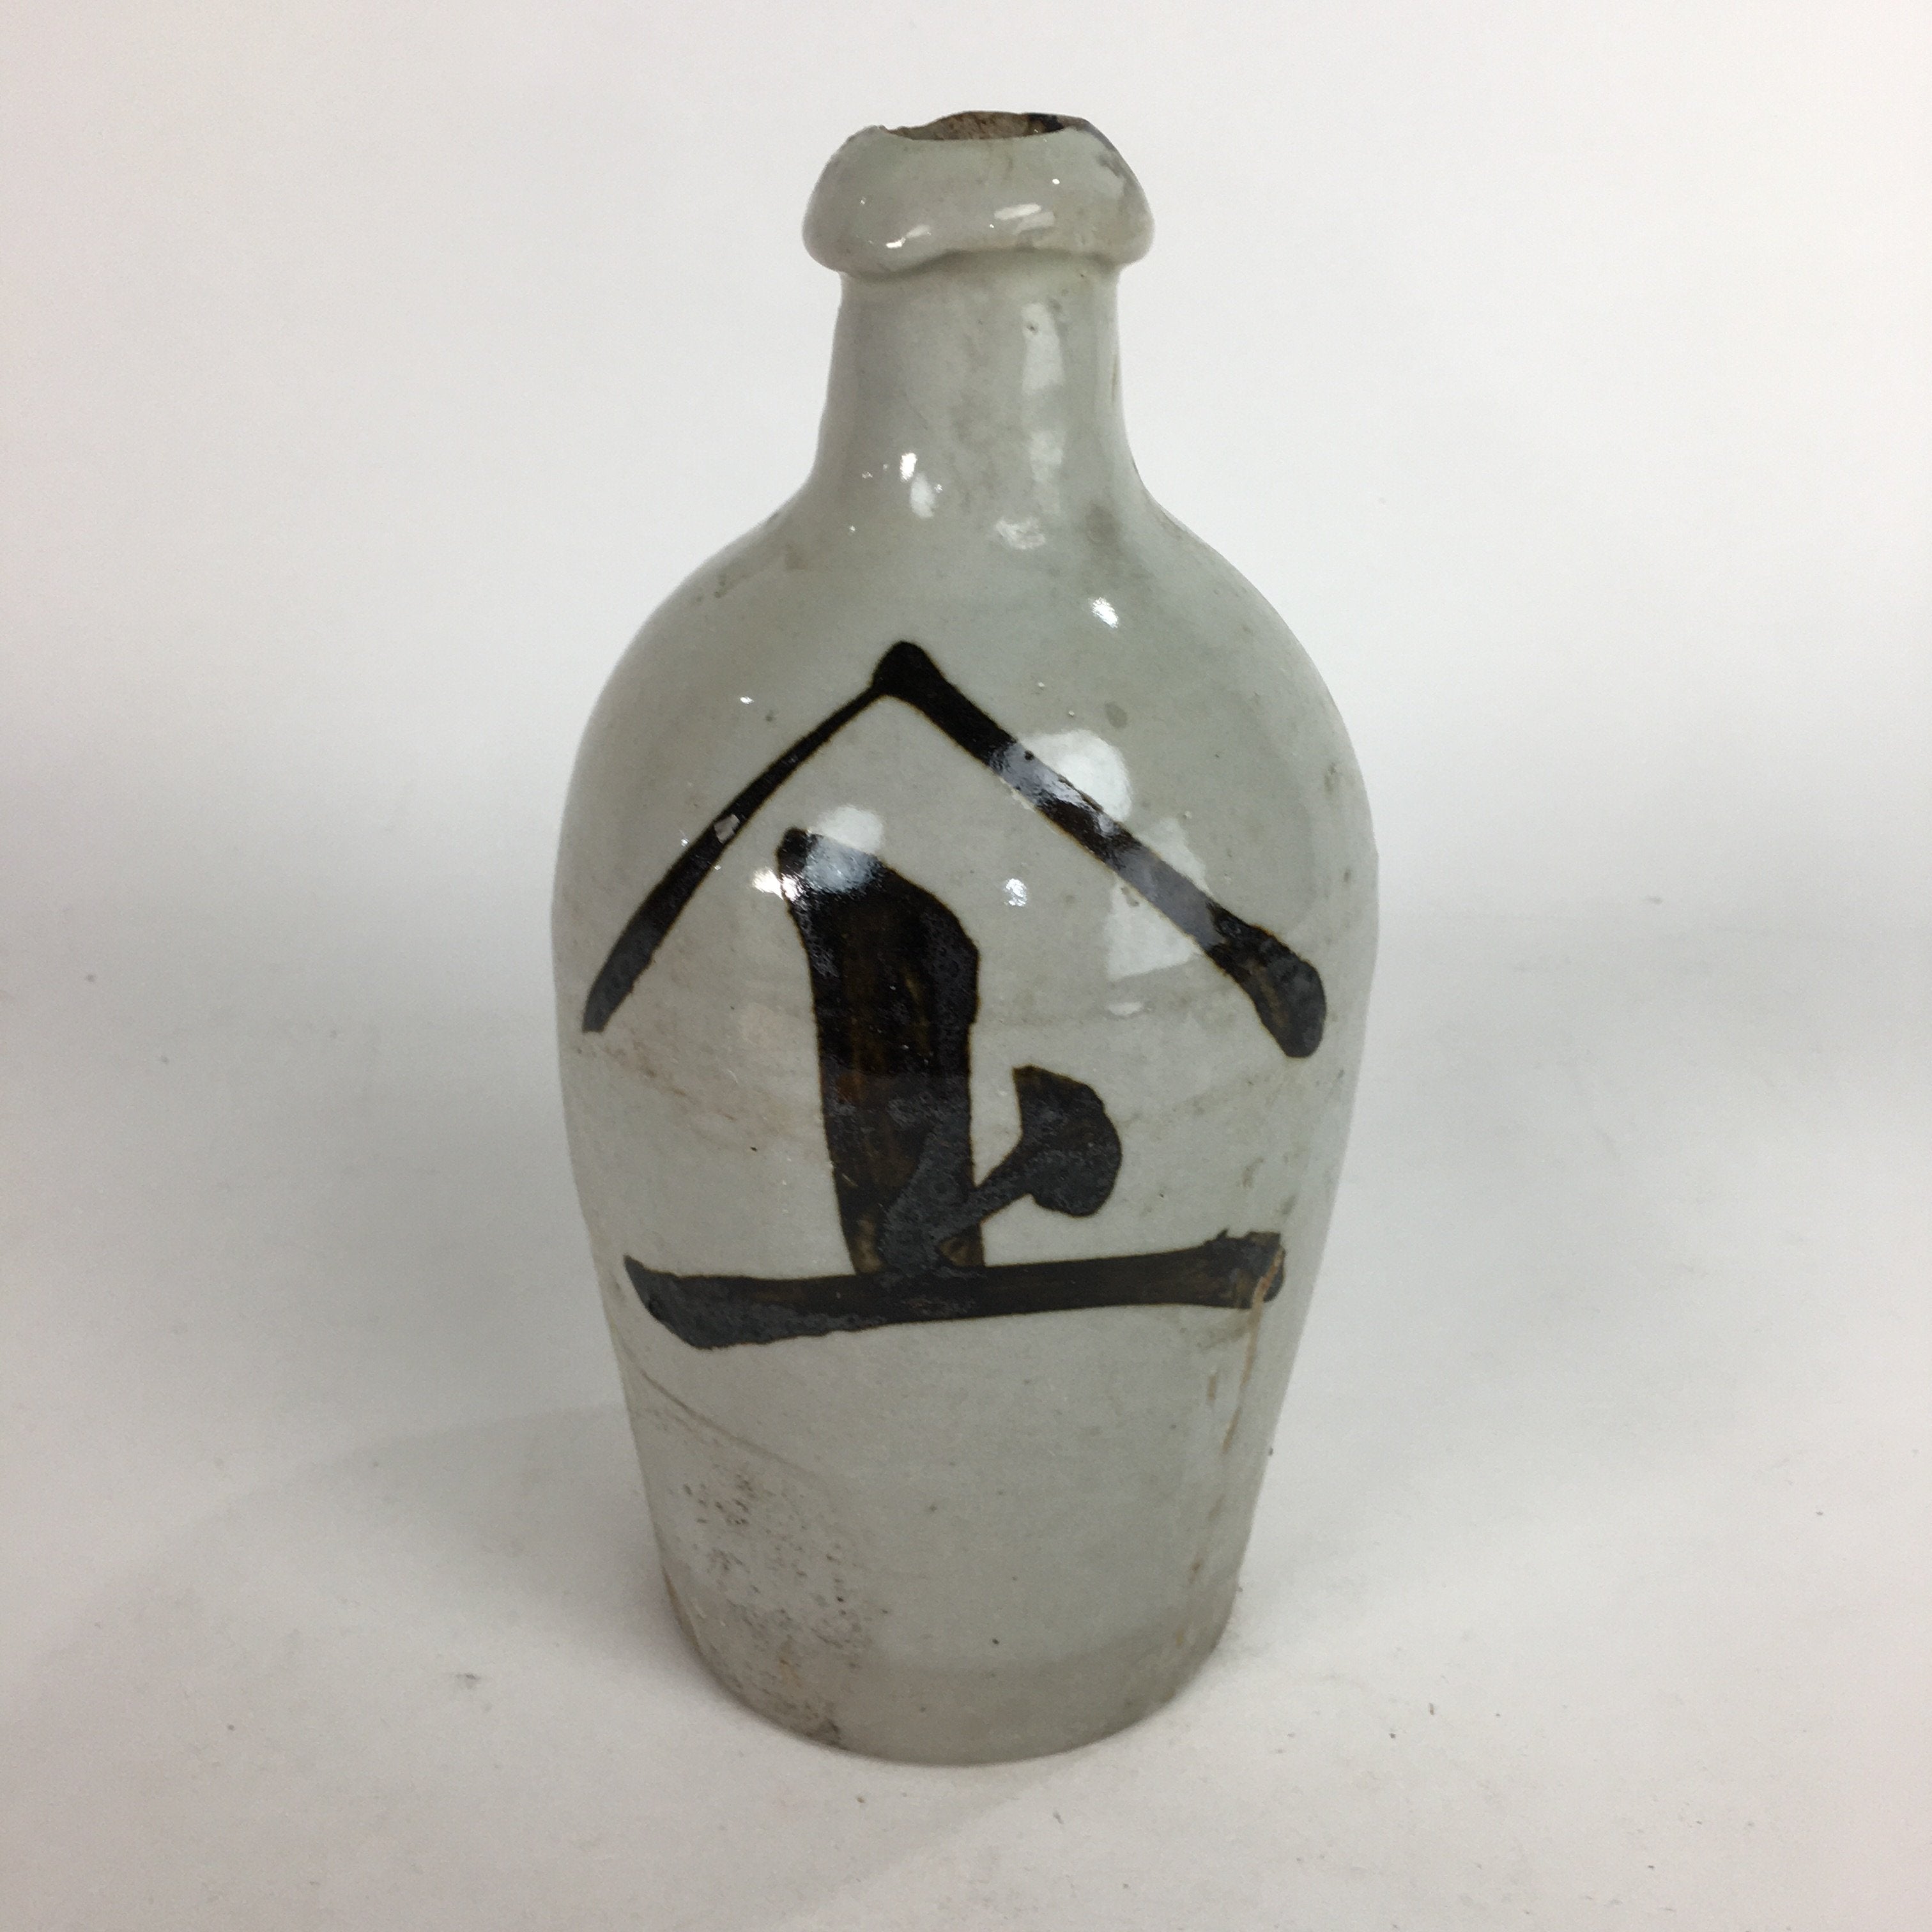 Japanese Ceramic Sake Bottle Tokkuri Vtg Pottery Gray Hand-Written Kanji TS275